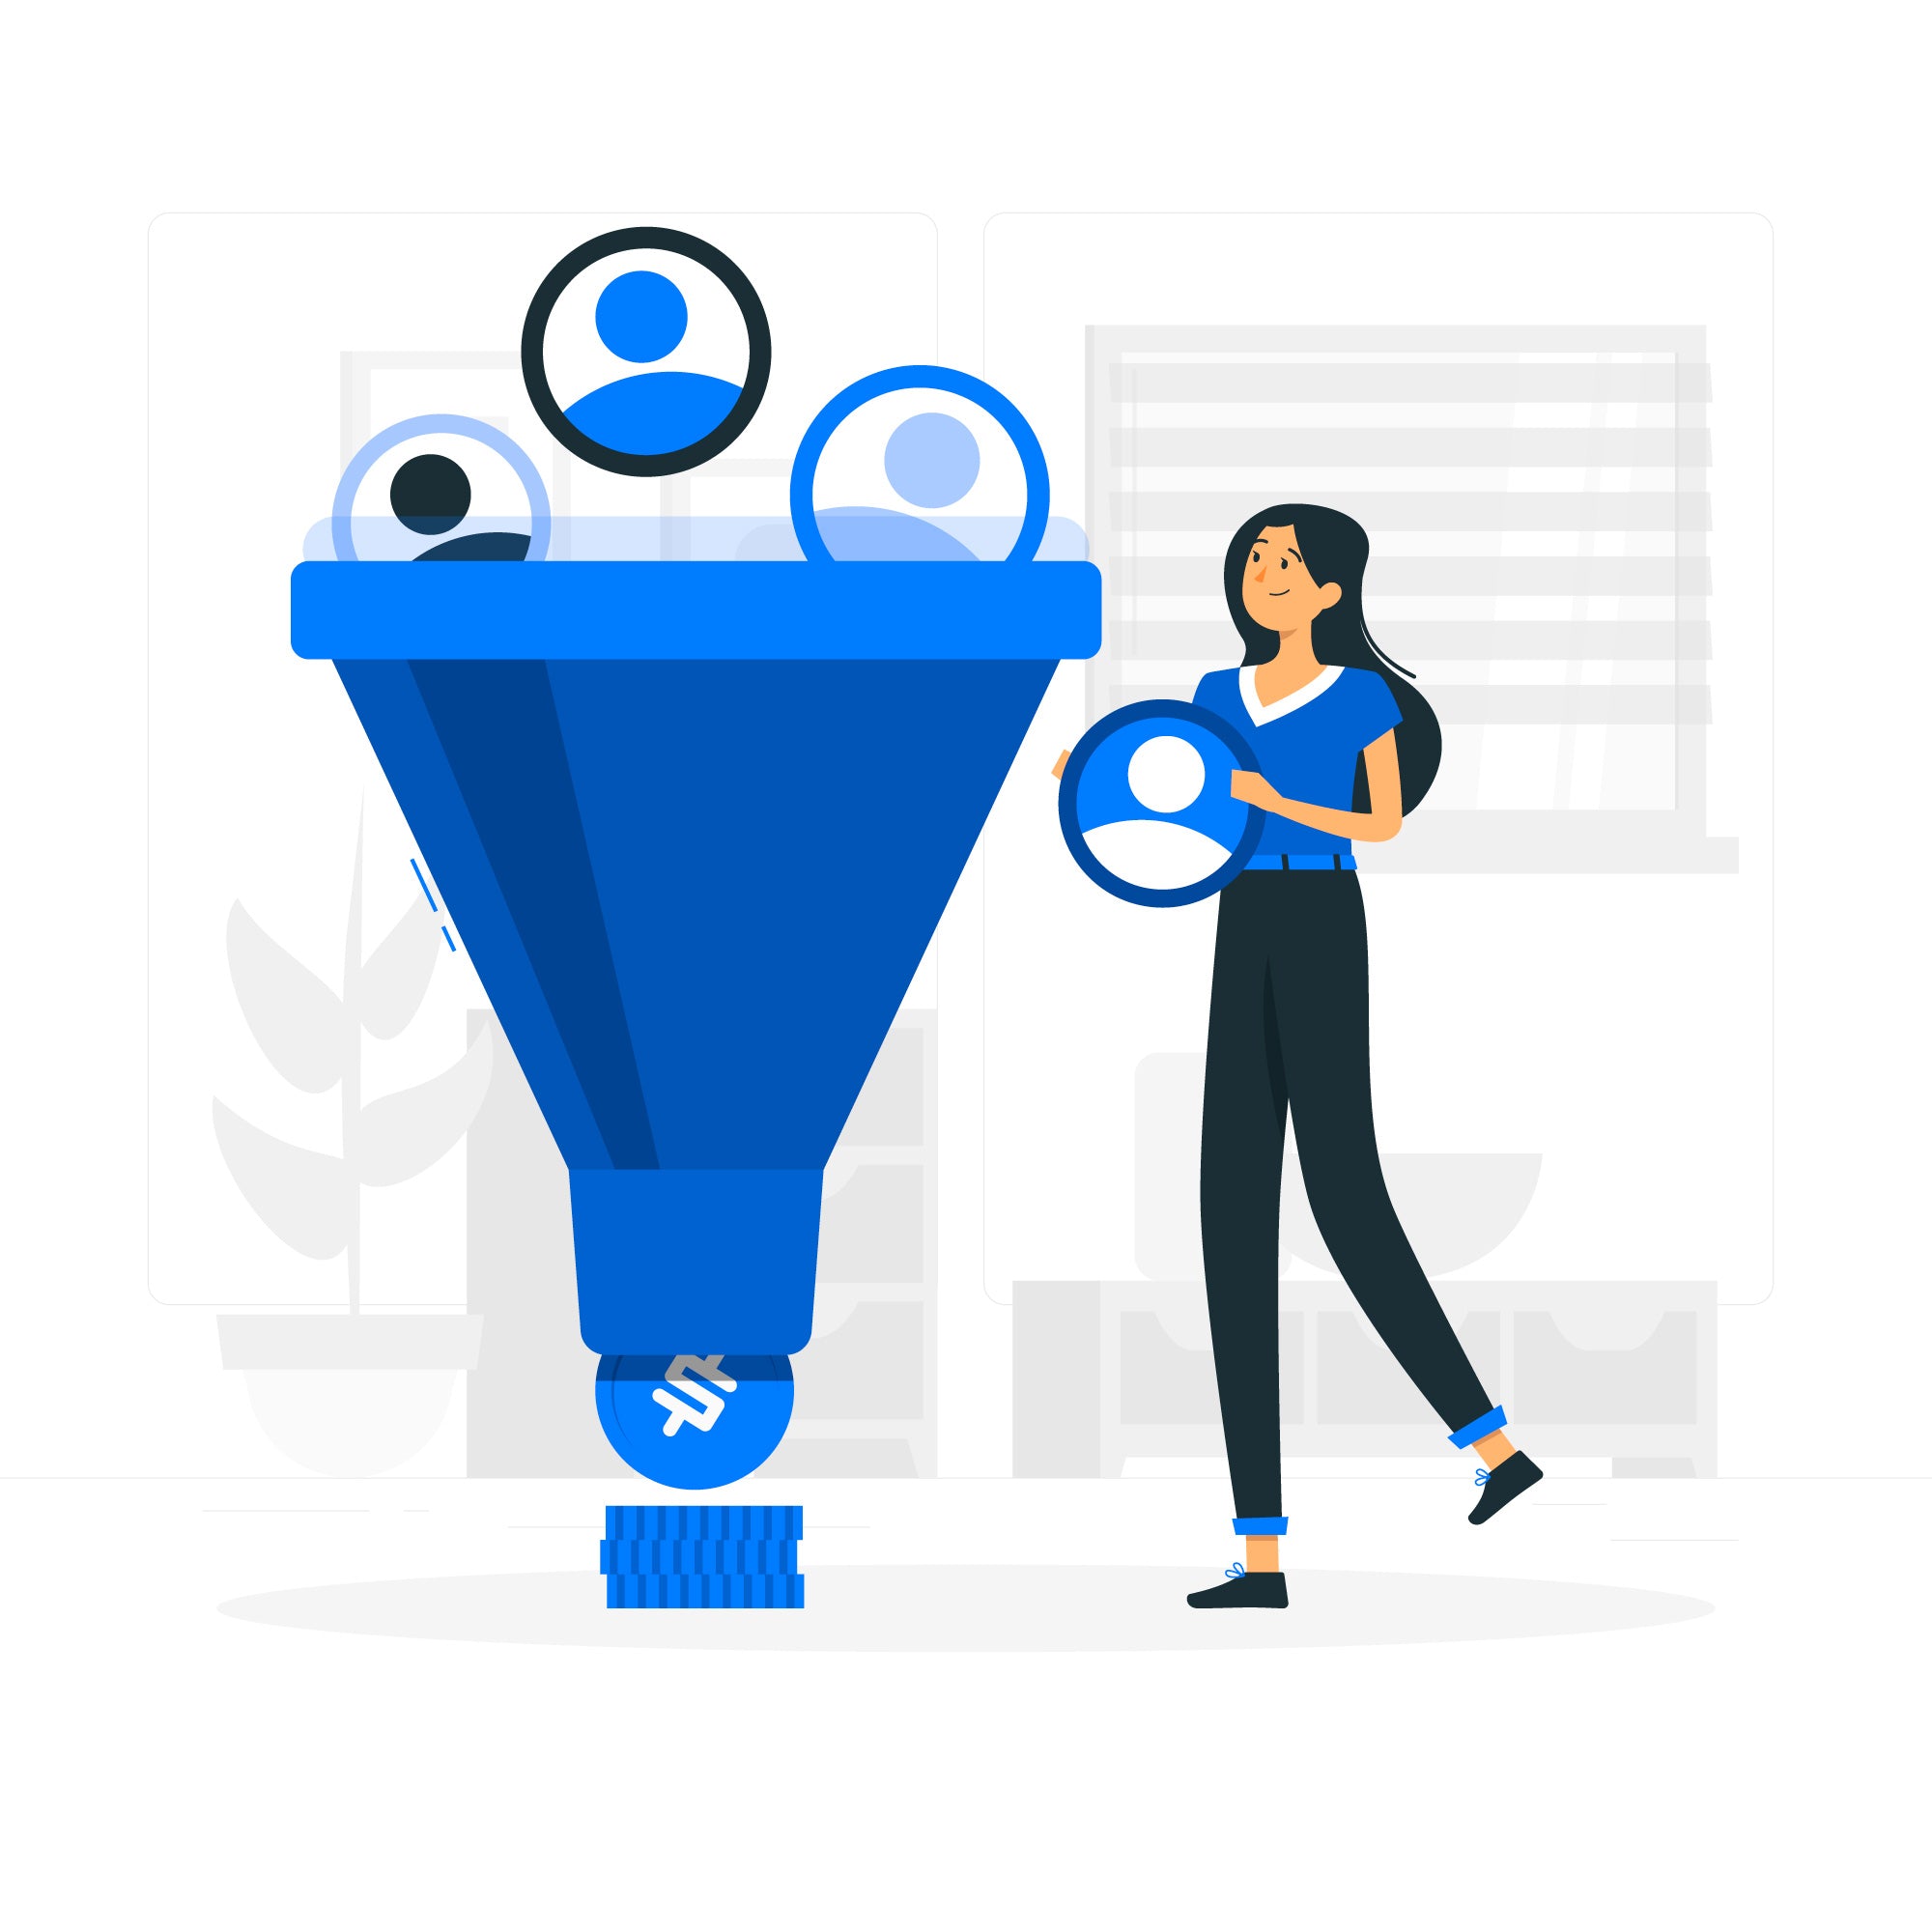 Ilustração em tons de branco, azul e preto. Mostra uma moça com um grande funil de vendas na cor azul, onde ela insere símbolos que indicam clientes.